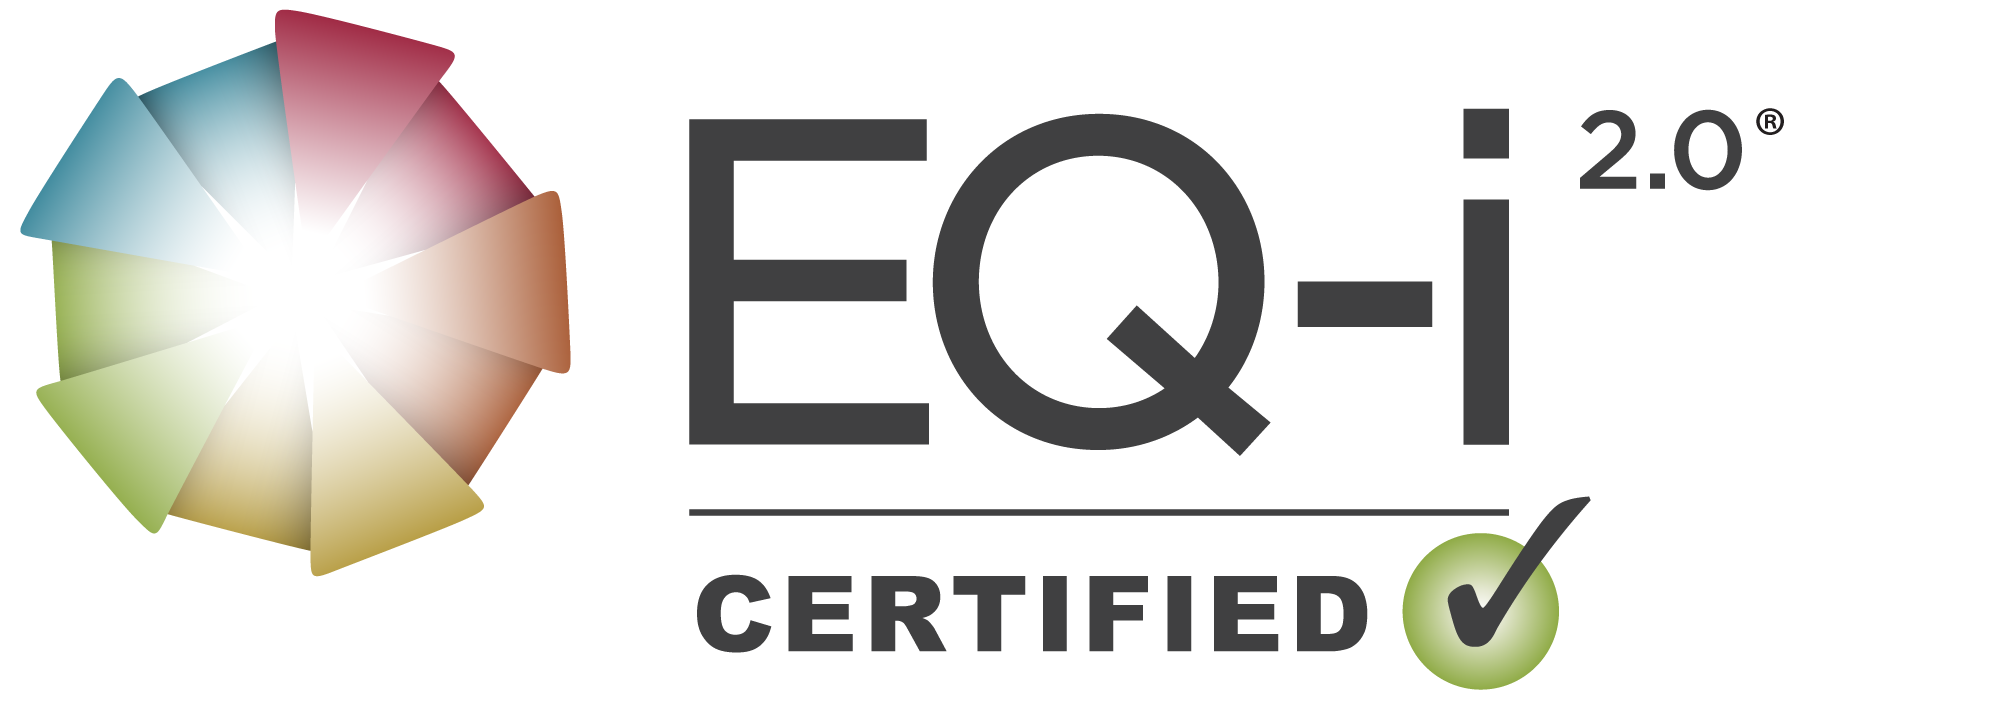 Certified_Logos_EQ-i2.0.png